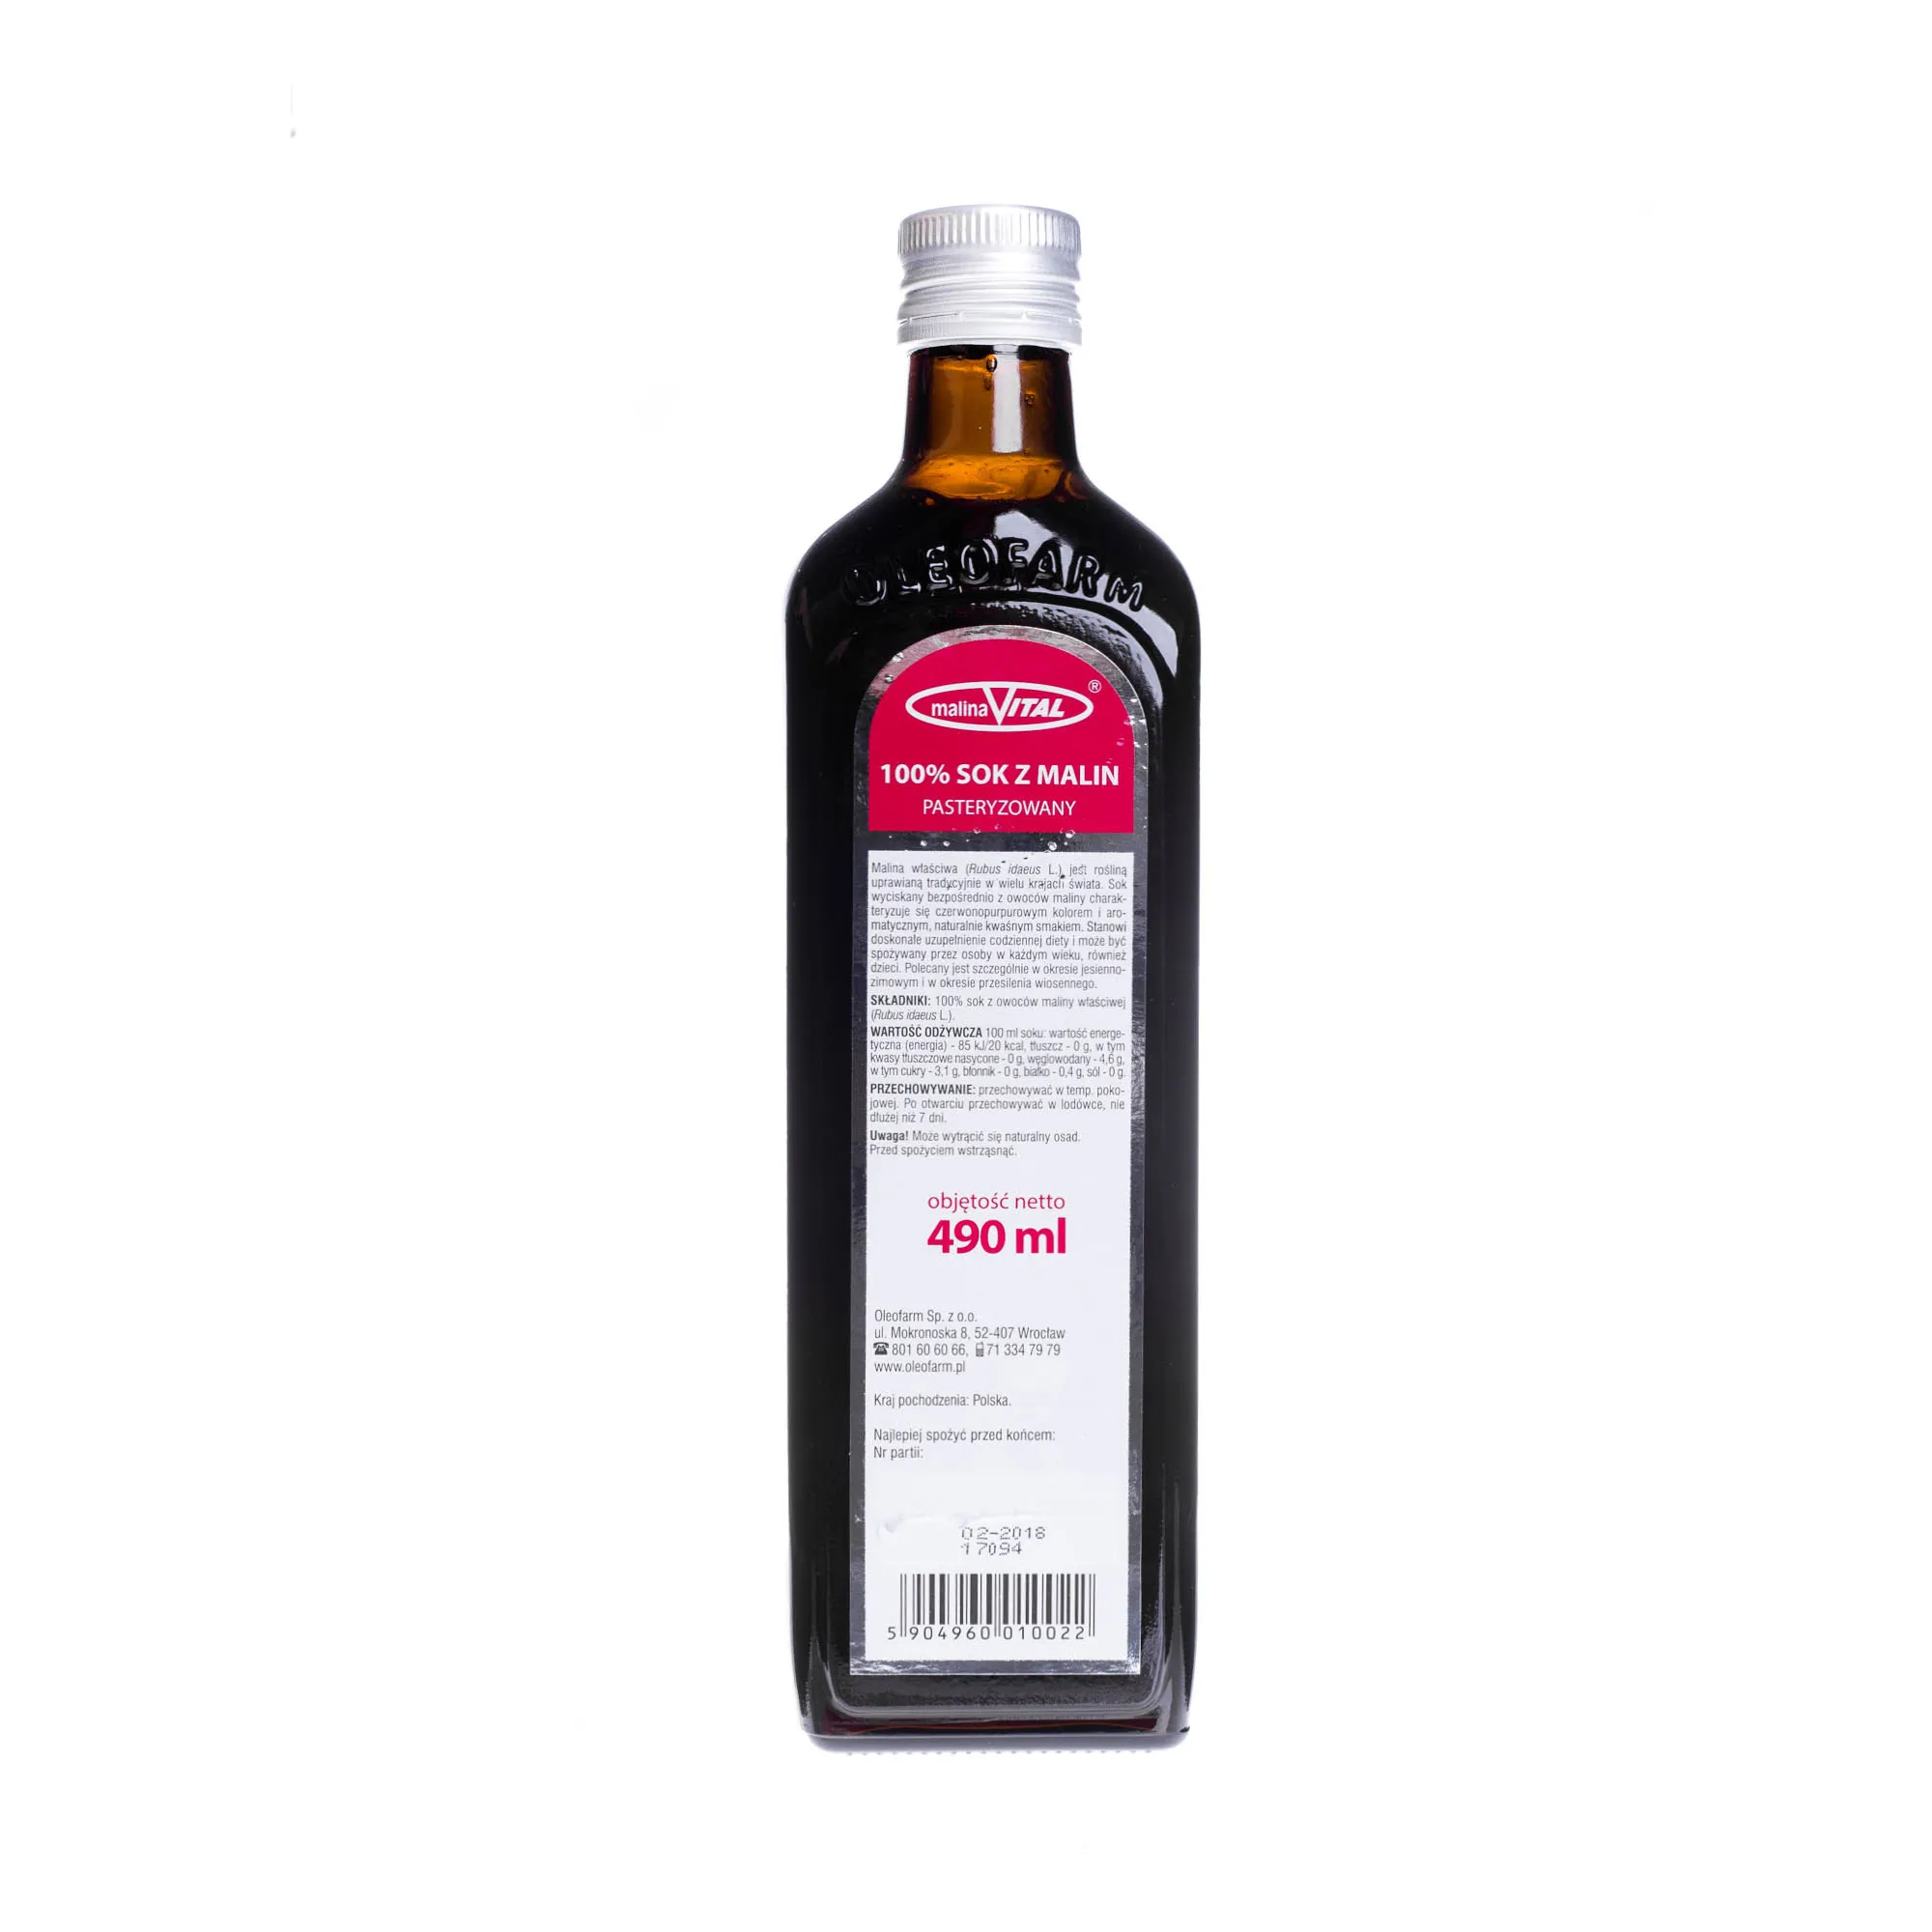 MalinaVital 100% sok z malin, pasteryzowany, 490 ml 